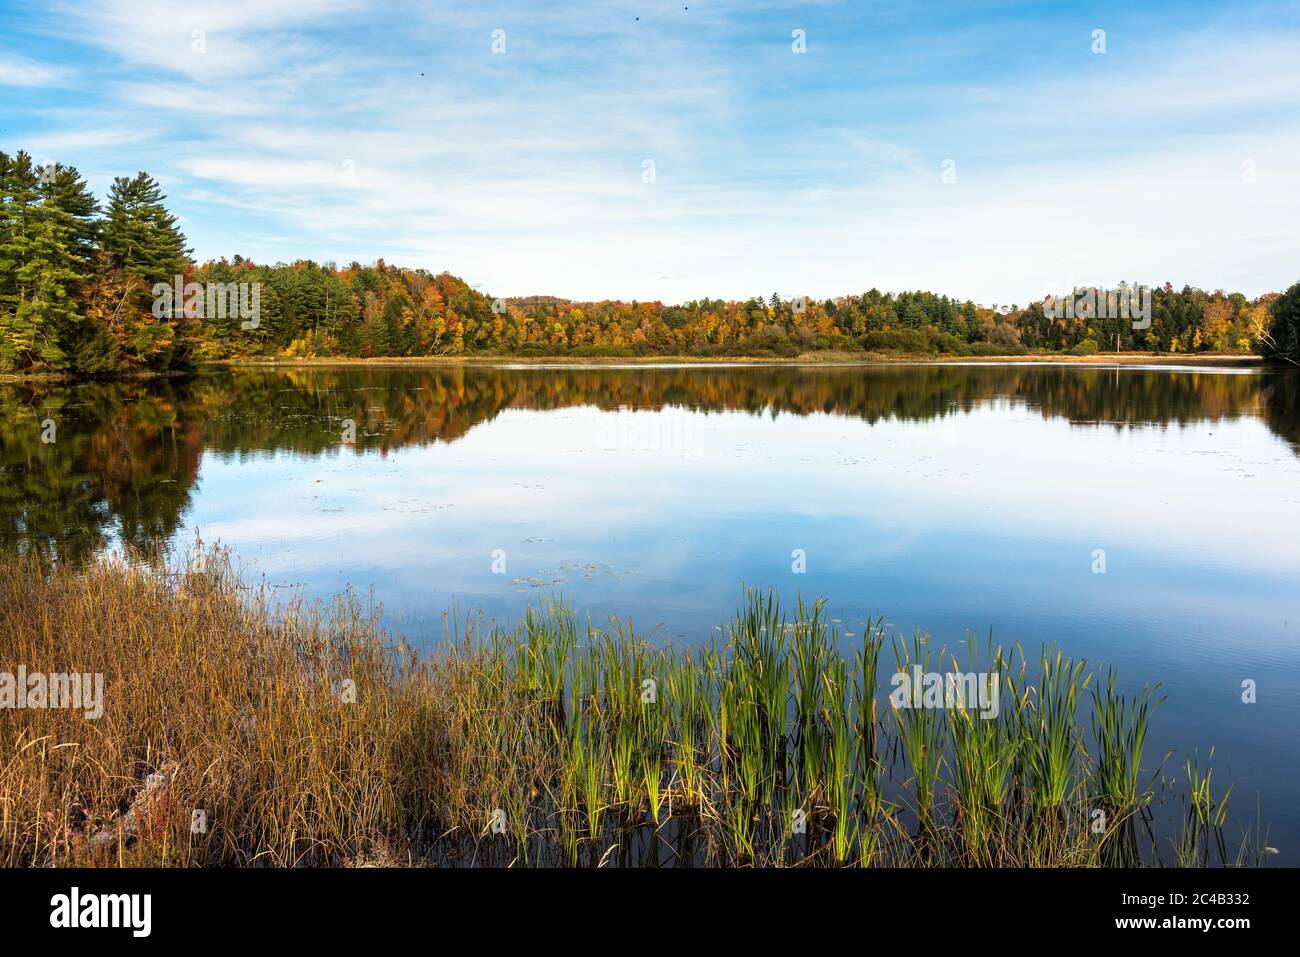 Ruhige Landschaft mit einem See umgeben von Wald an einem klaren Herbsttag. Schöne Herbstfarben und Reflexion im Wasser. Stockfoto